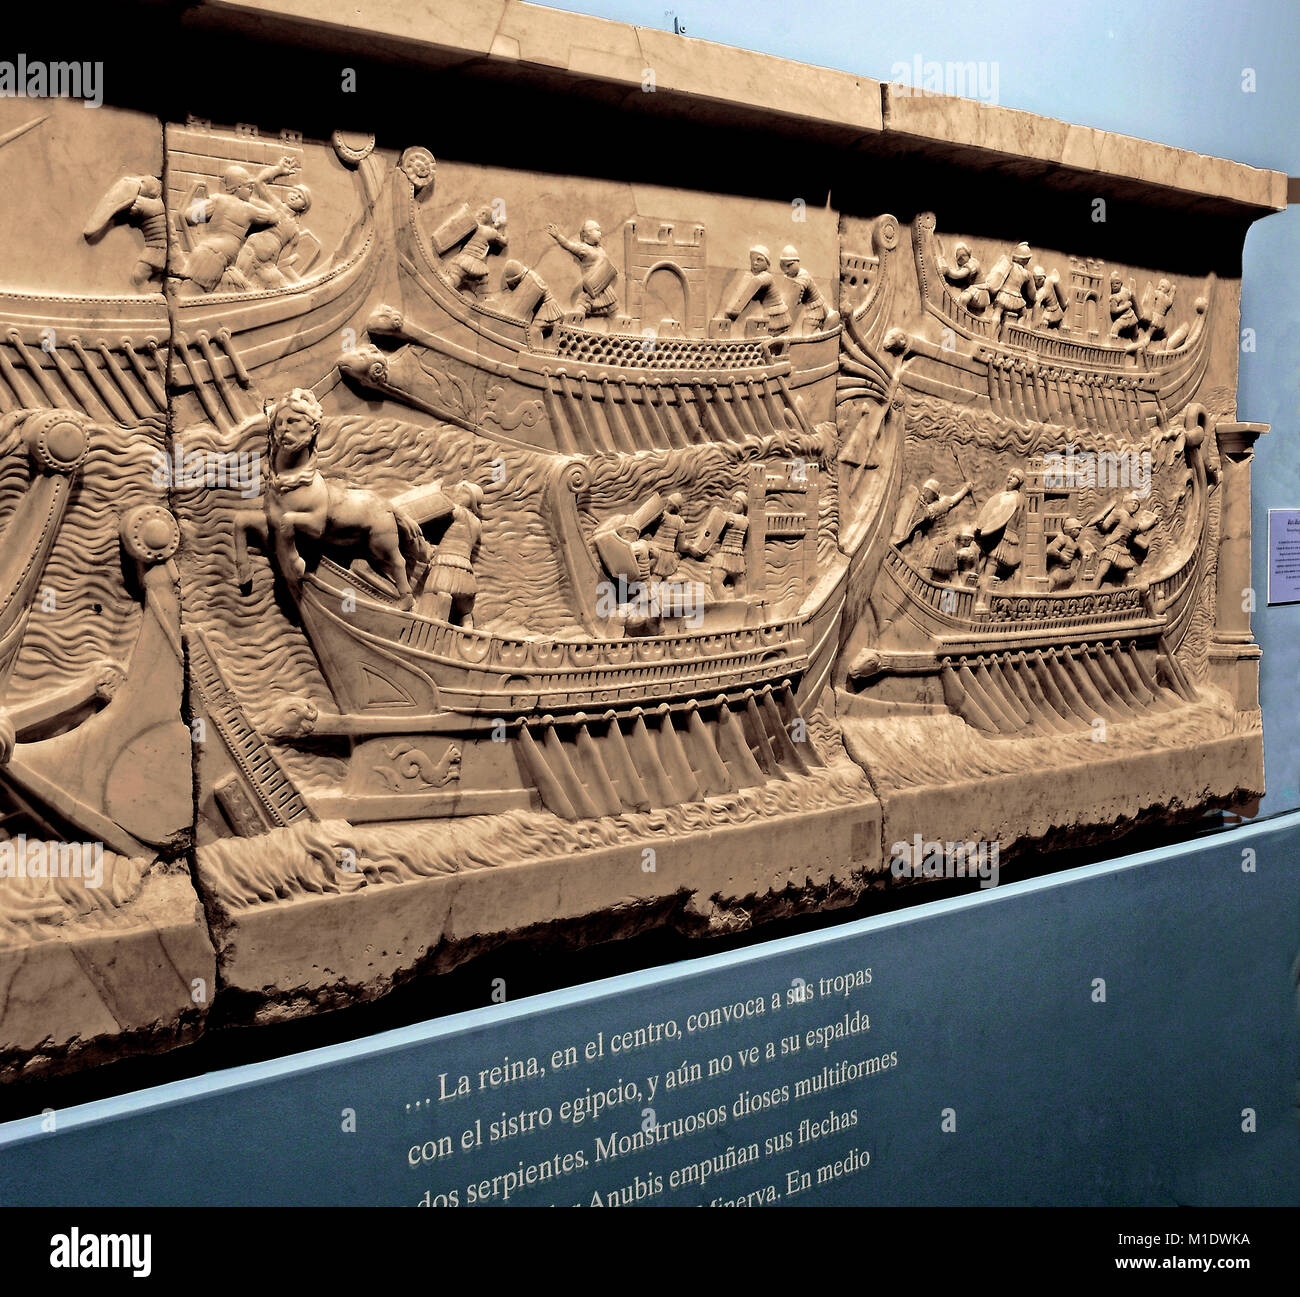 Allégement romain, bataille navale d'Actium, 1er siècle, Duques de Cardona Collection, Cordoue, Andalousie, Espagne, Europe Banque D'Images